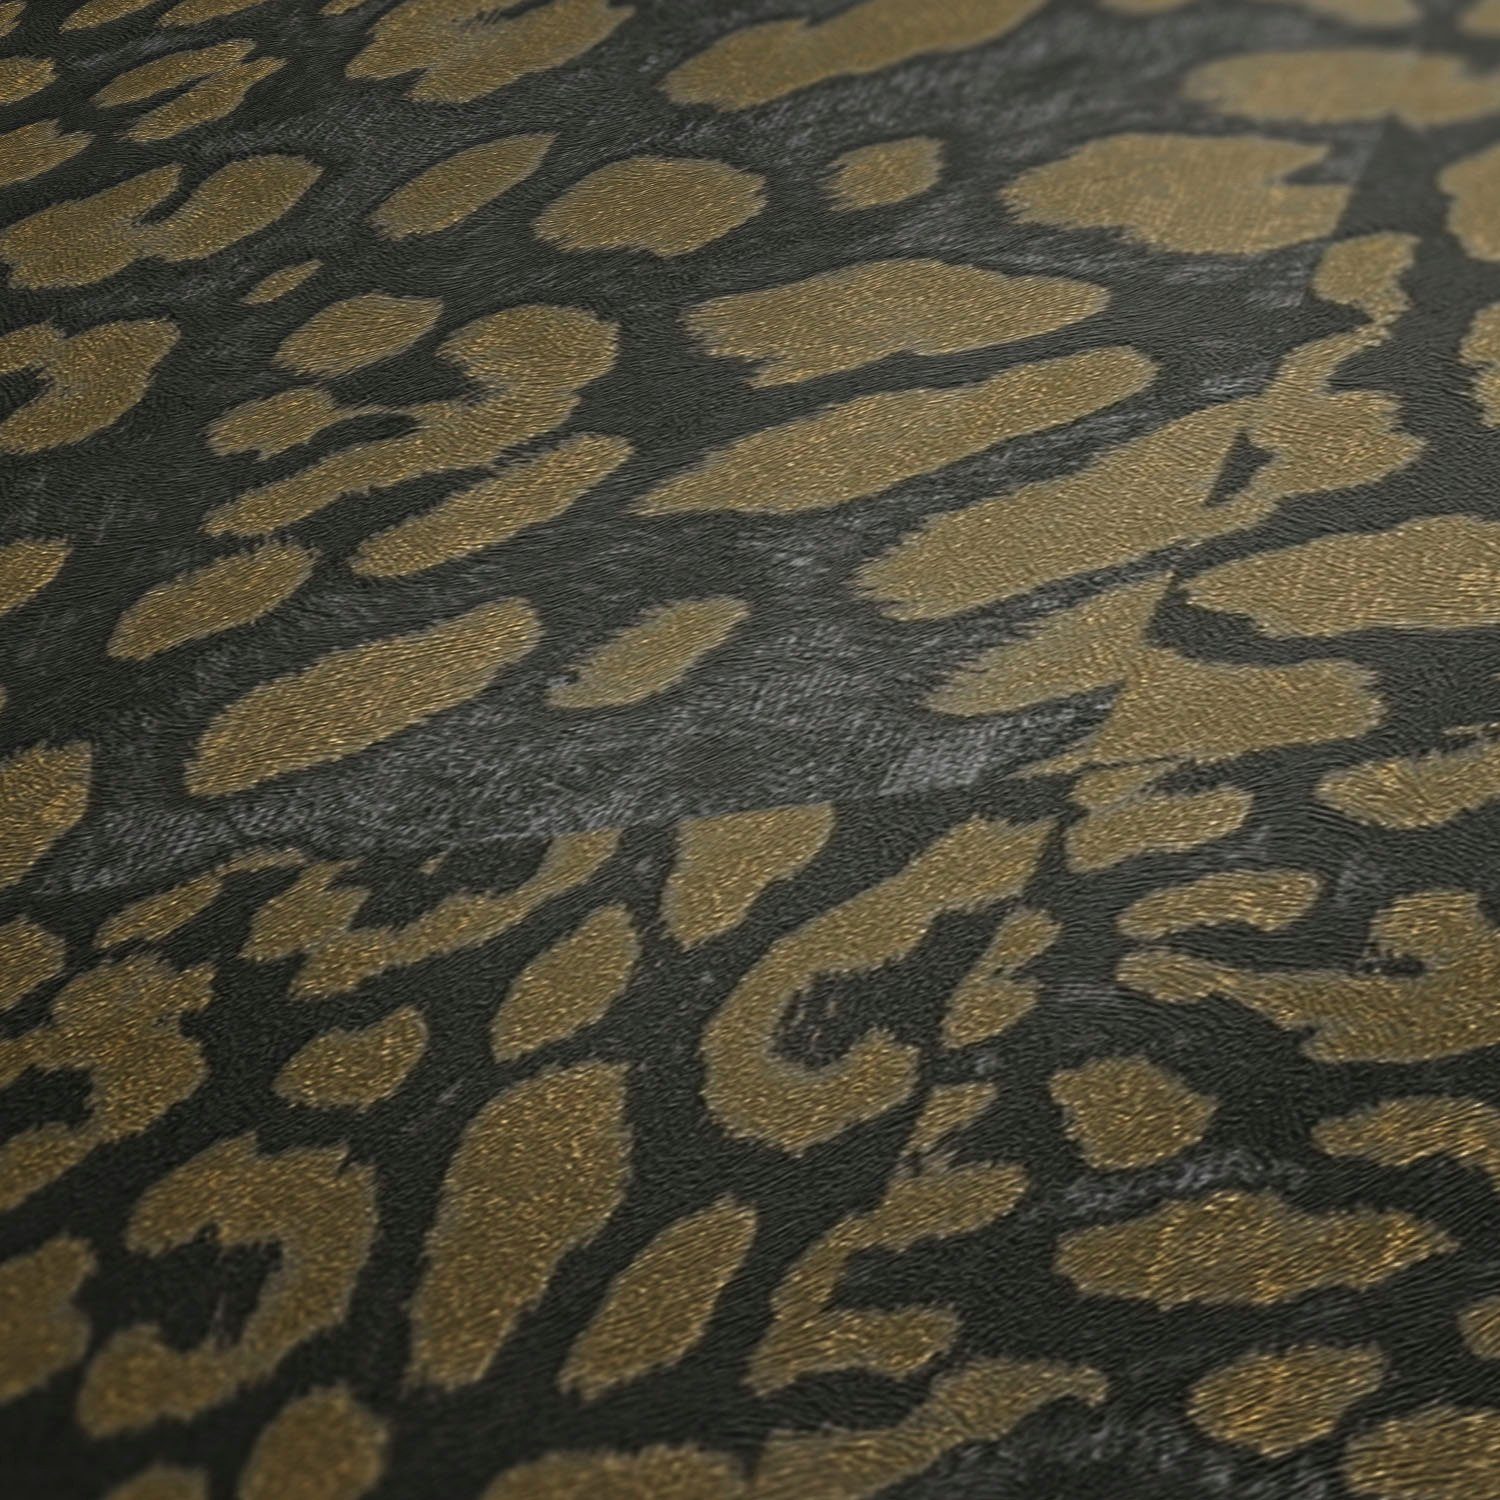 living walls Tapete gold/schwarz animal strukturiert, print, Lodge, Fellimitat, Vliestapete Leopardenmuster gemustert, Desert